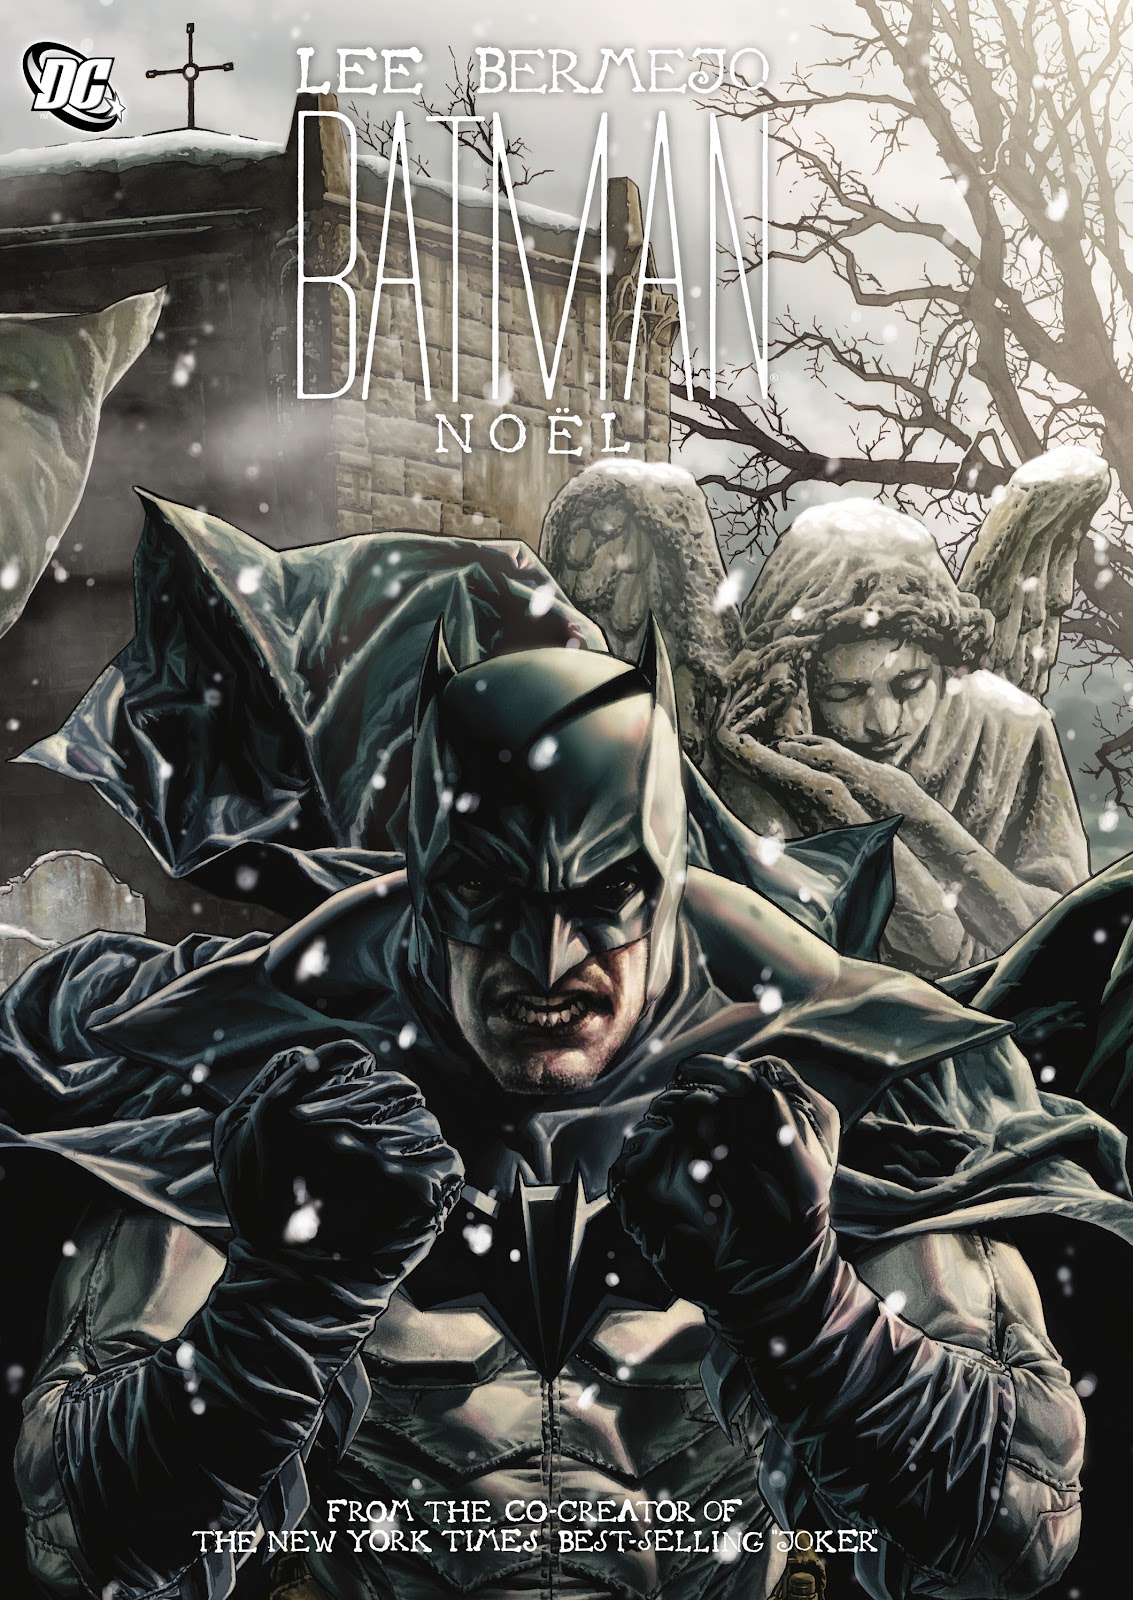 1133px x 1600px - Batman Noel | Read Batman Noel comic online in high quality. Read Full Comic  online for free - Read comics online in high quality .| READ COMIC ONLINE